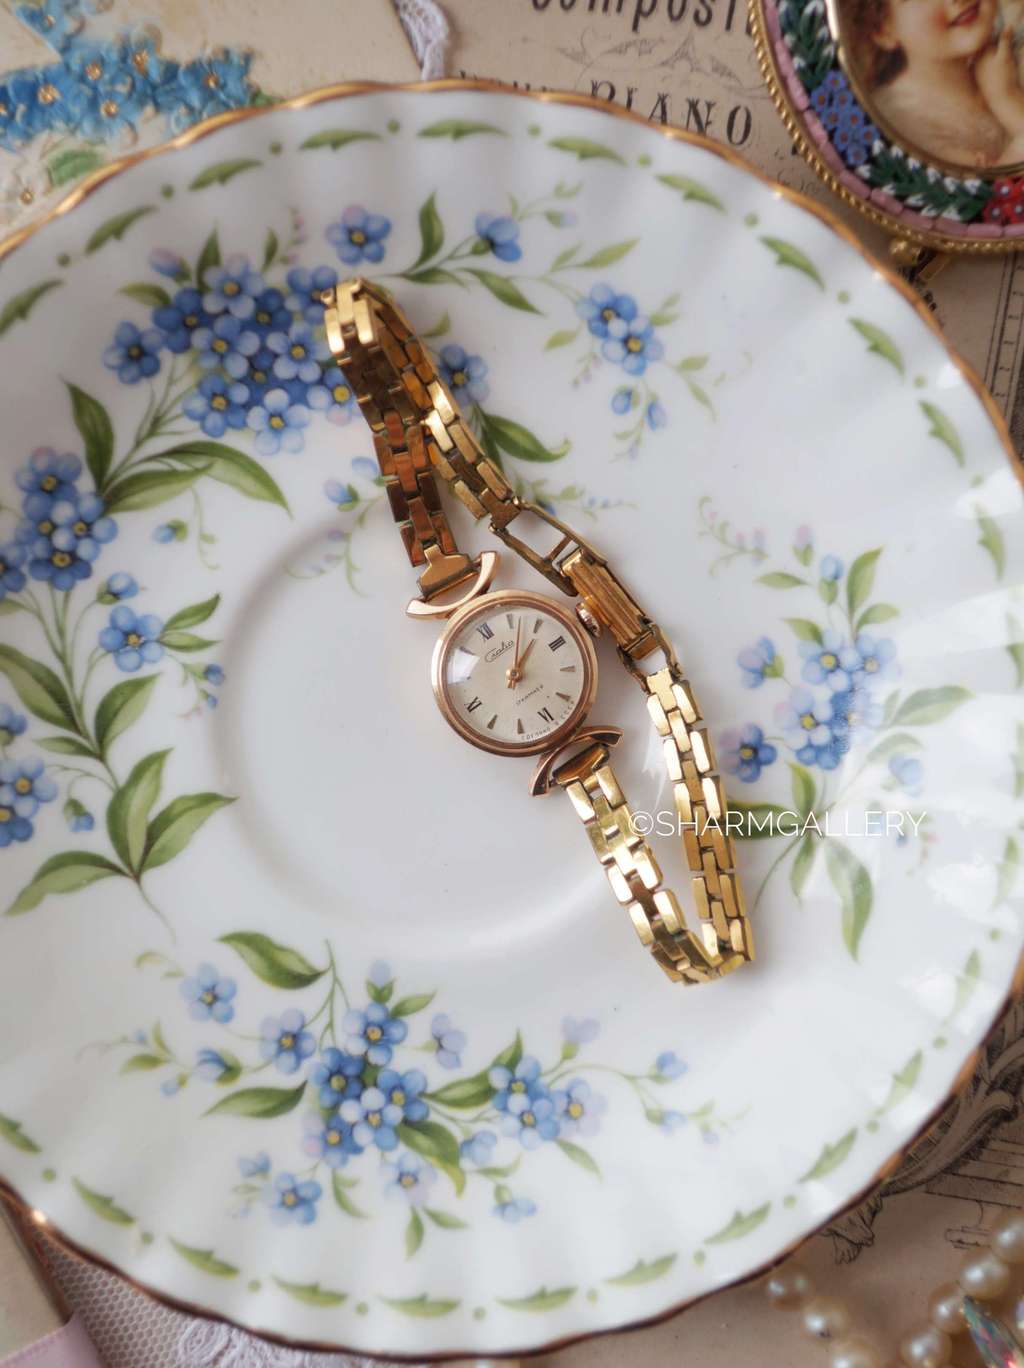 Советские женские золотые часы Чайка на браслете